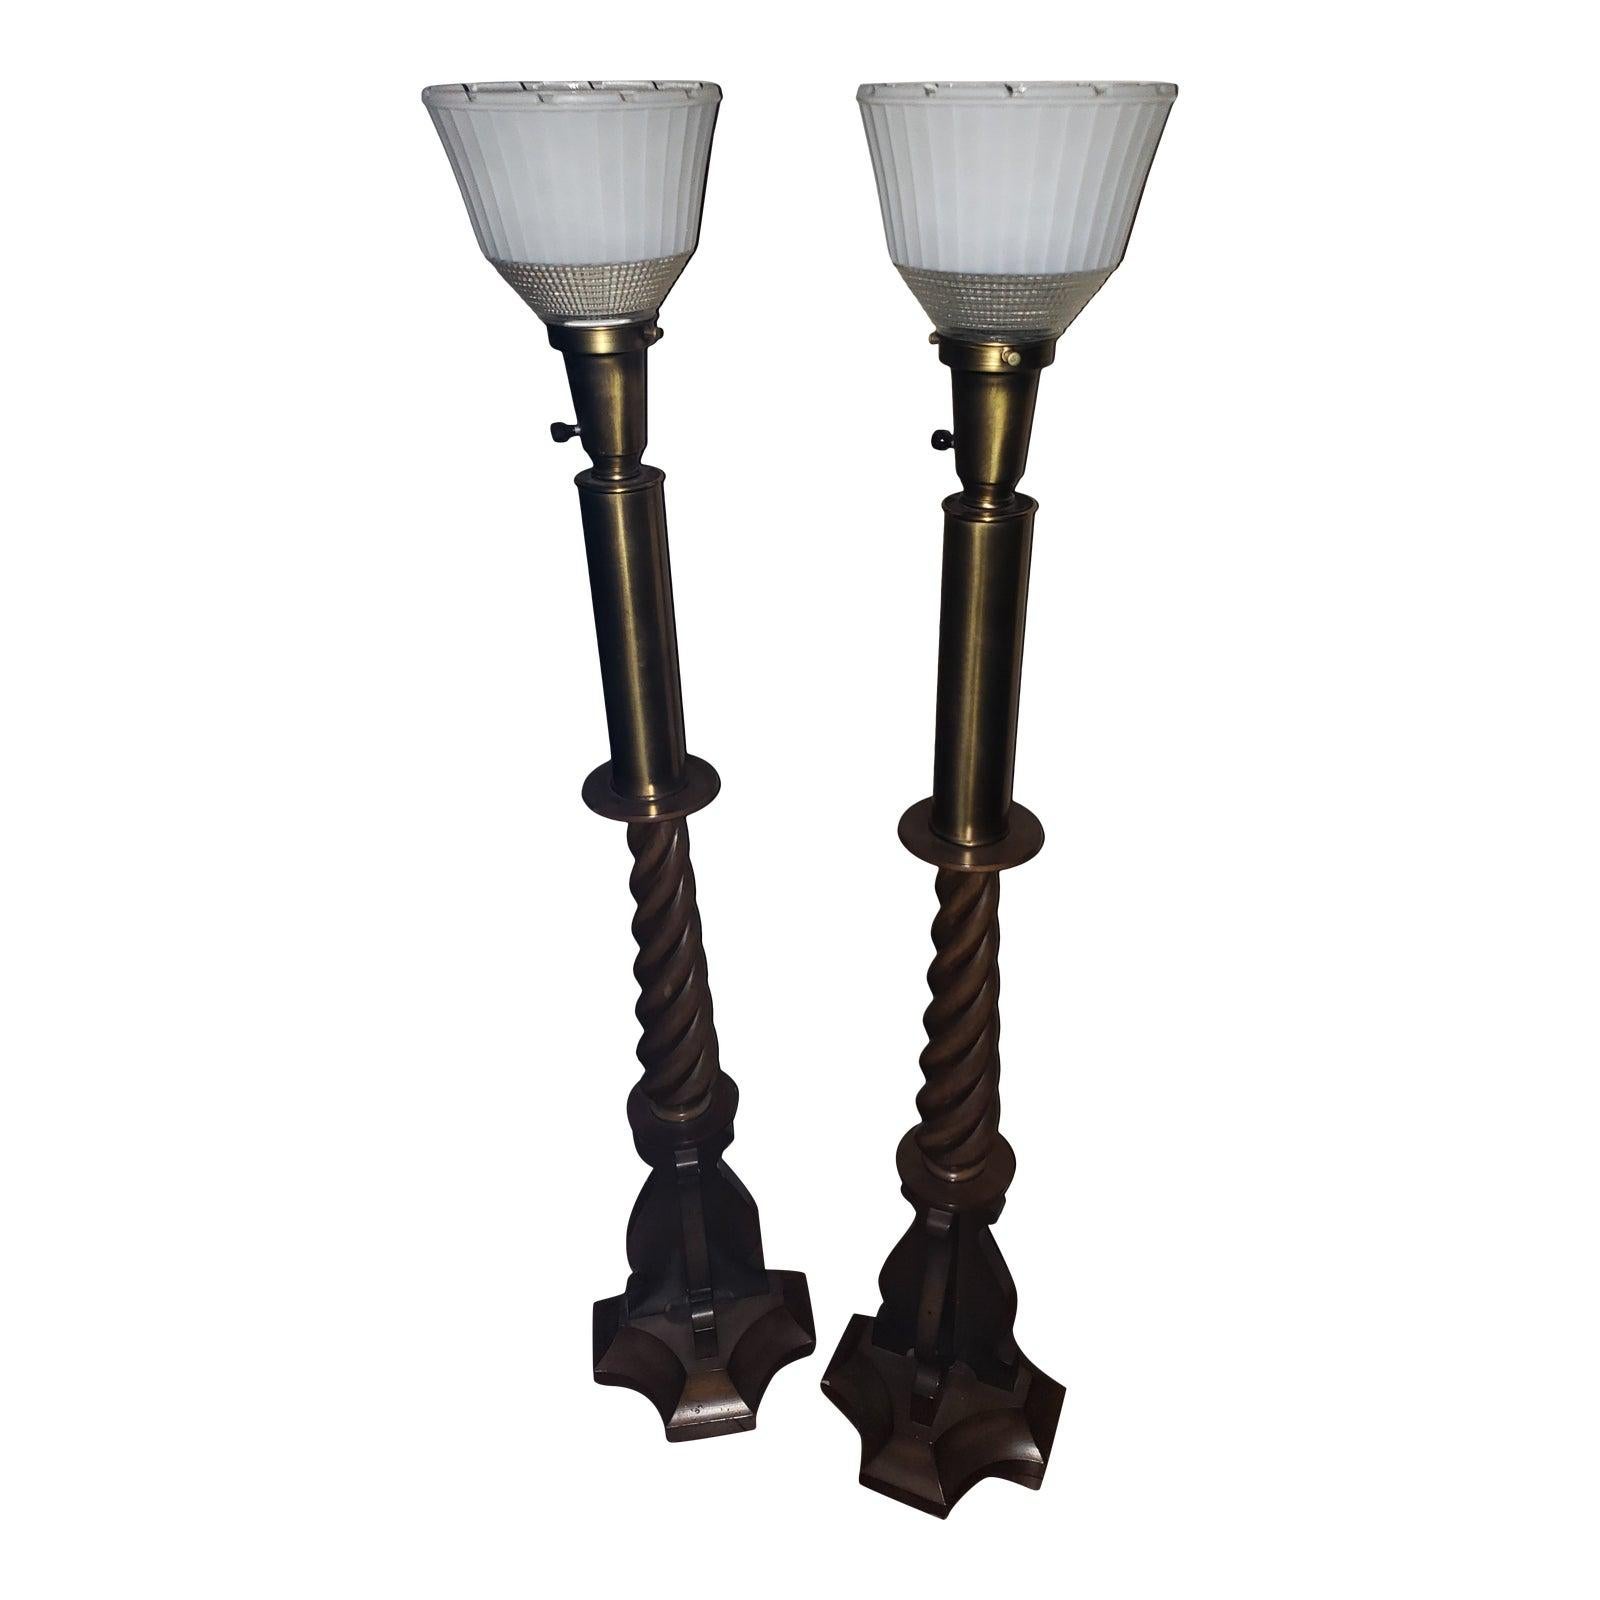 Lightolier-Lampen aus geschnitztem Nussbaumholz und Messing, Milchglas, 1950er Jahre, Paar